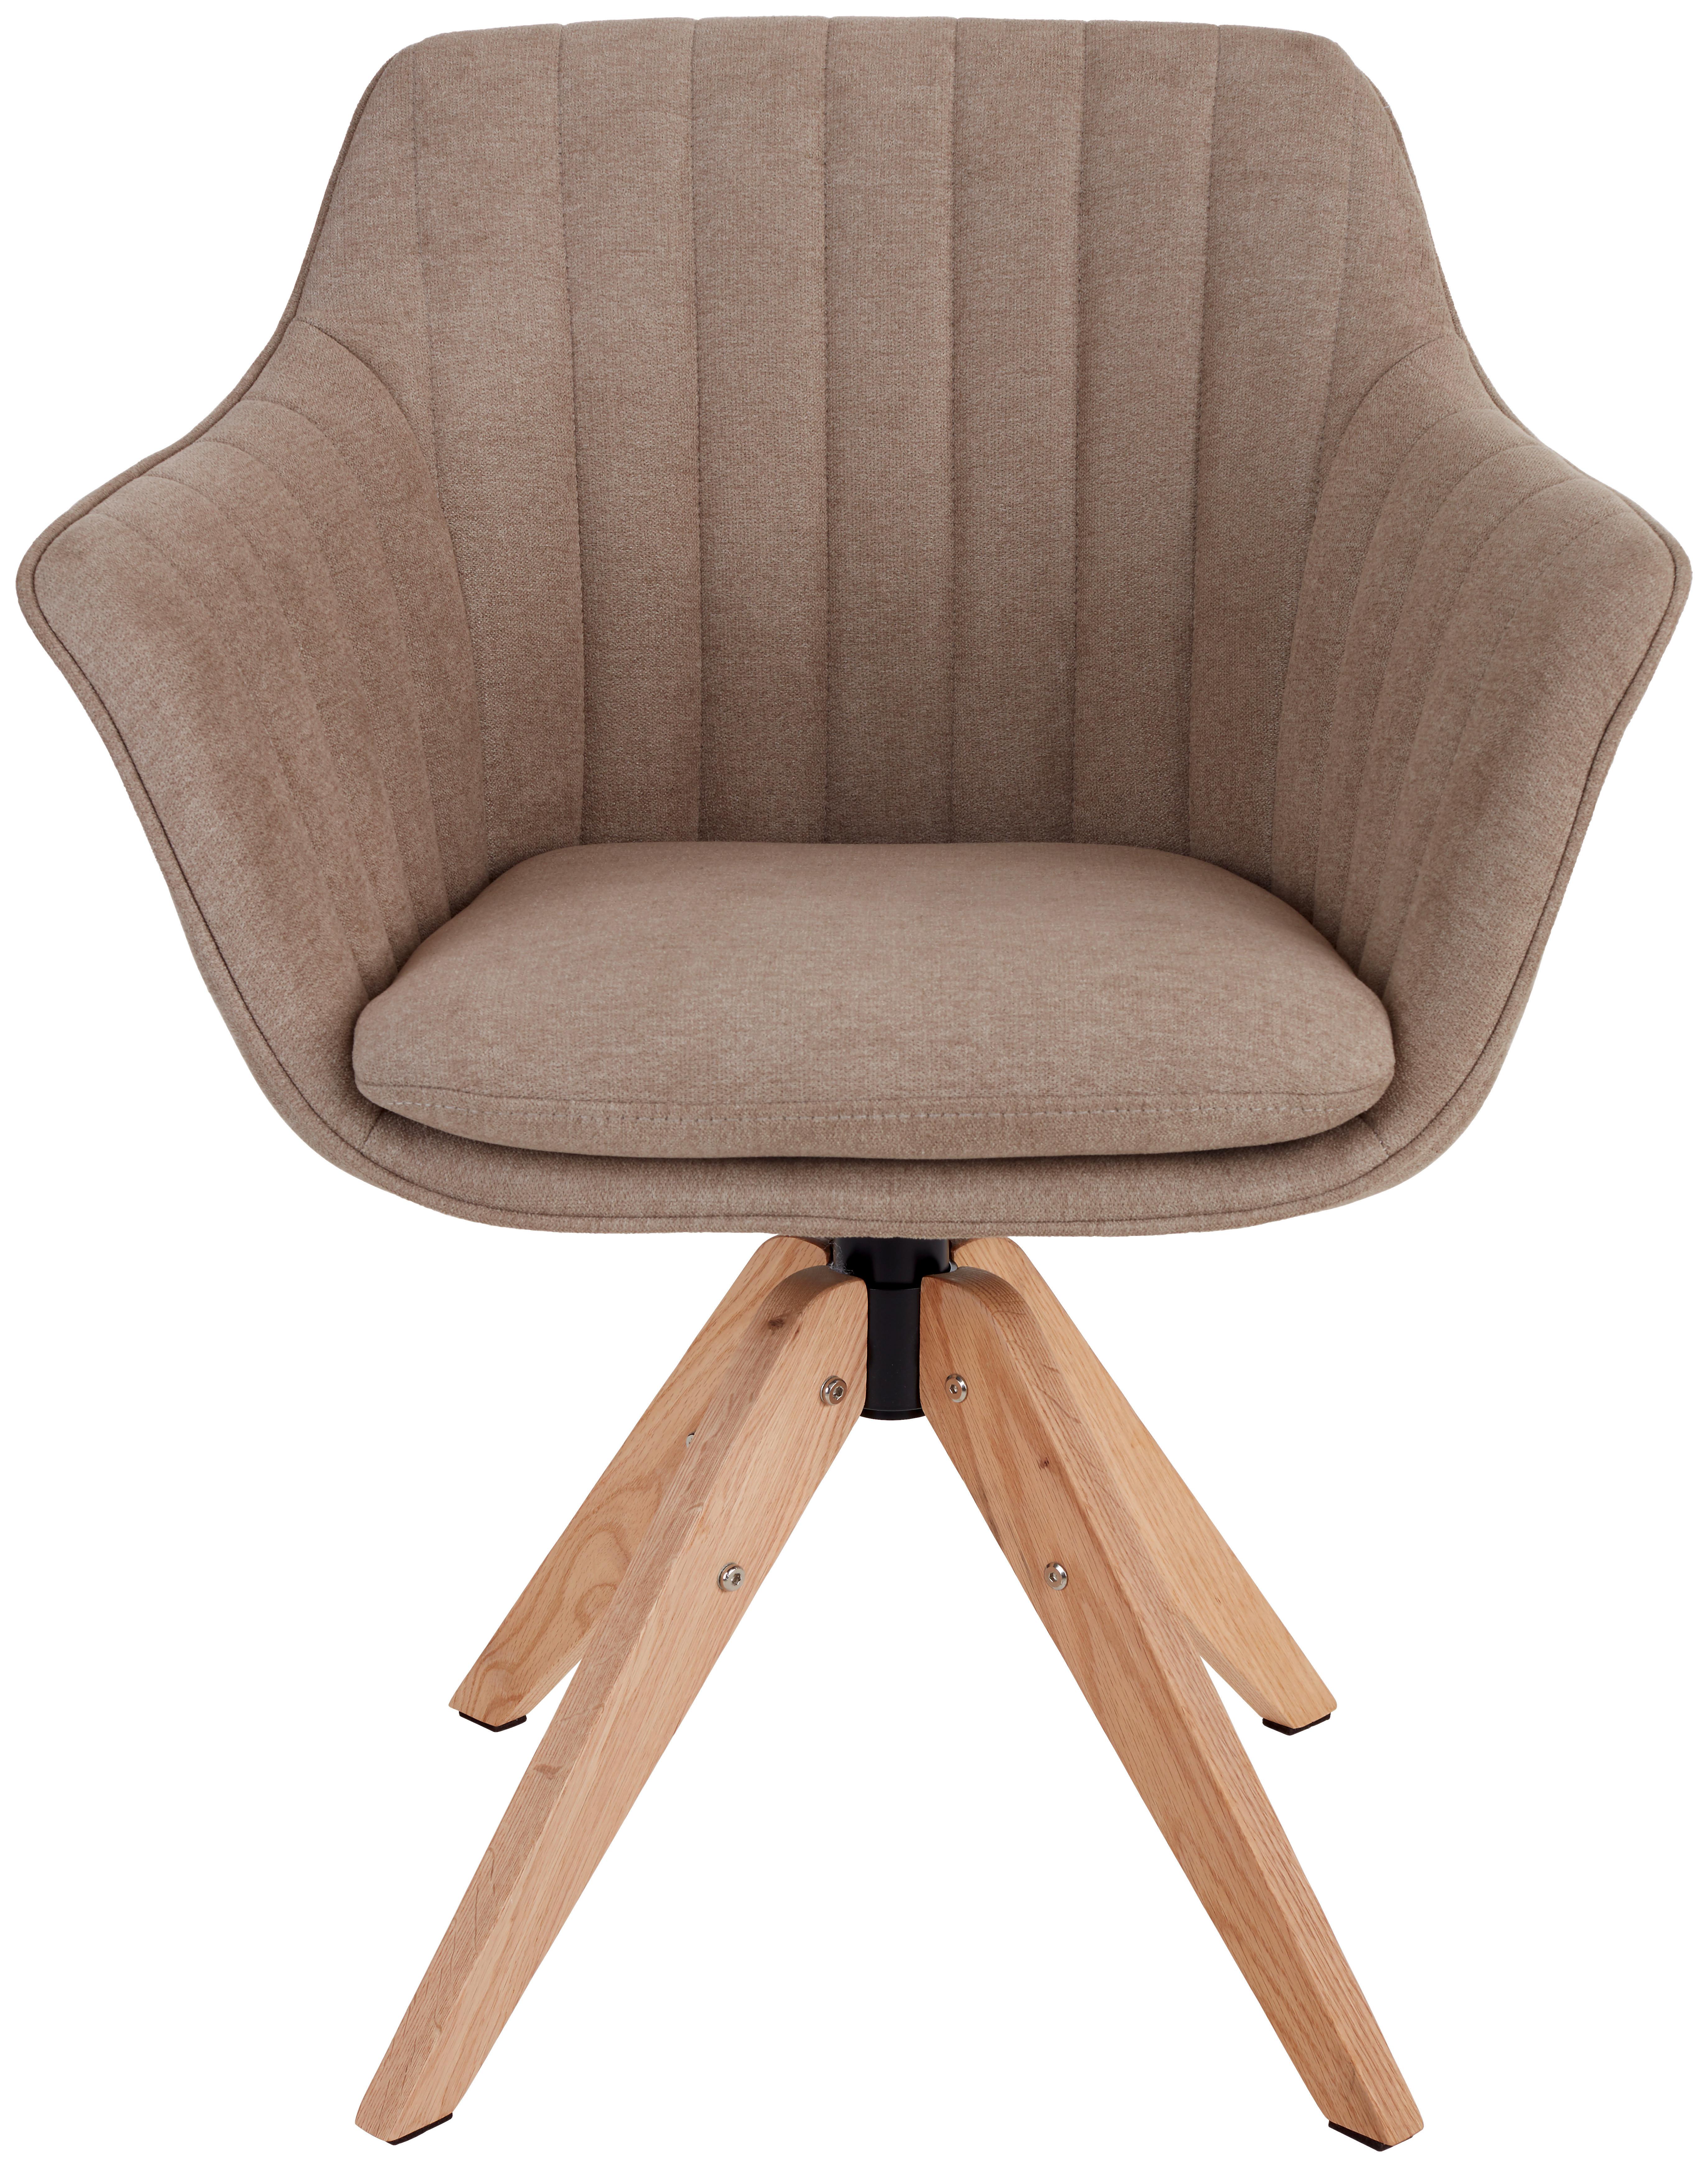 Armlehnstuhl Belluno Greige mit drehbarerer Sitzfläche - Greige/Eichefarben, MODERN, Holz/Textil (60/88/57,5cm) - MID.YOU